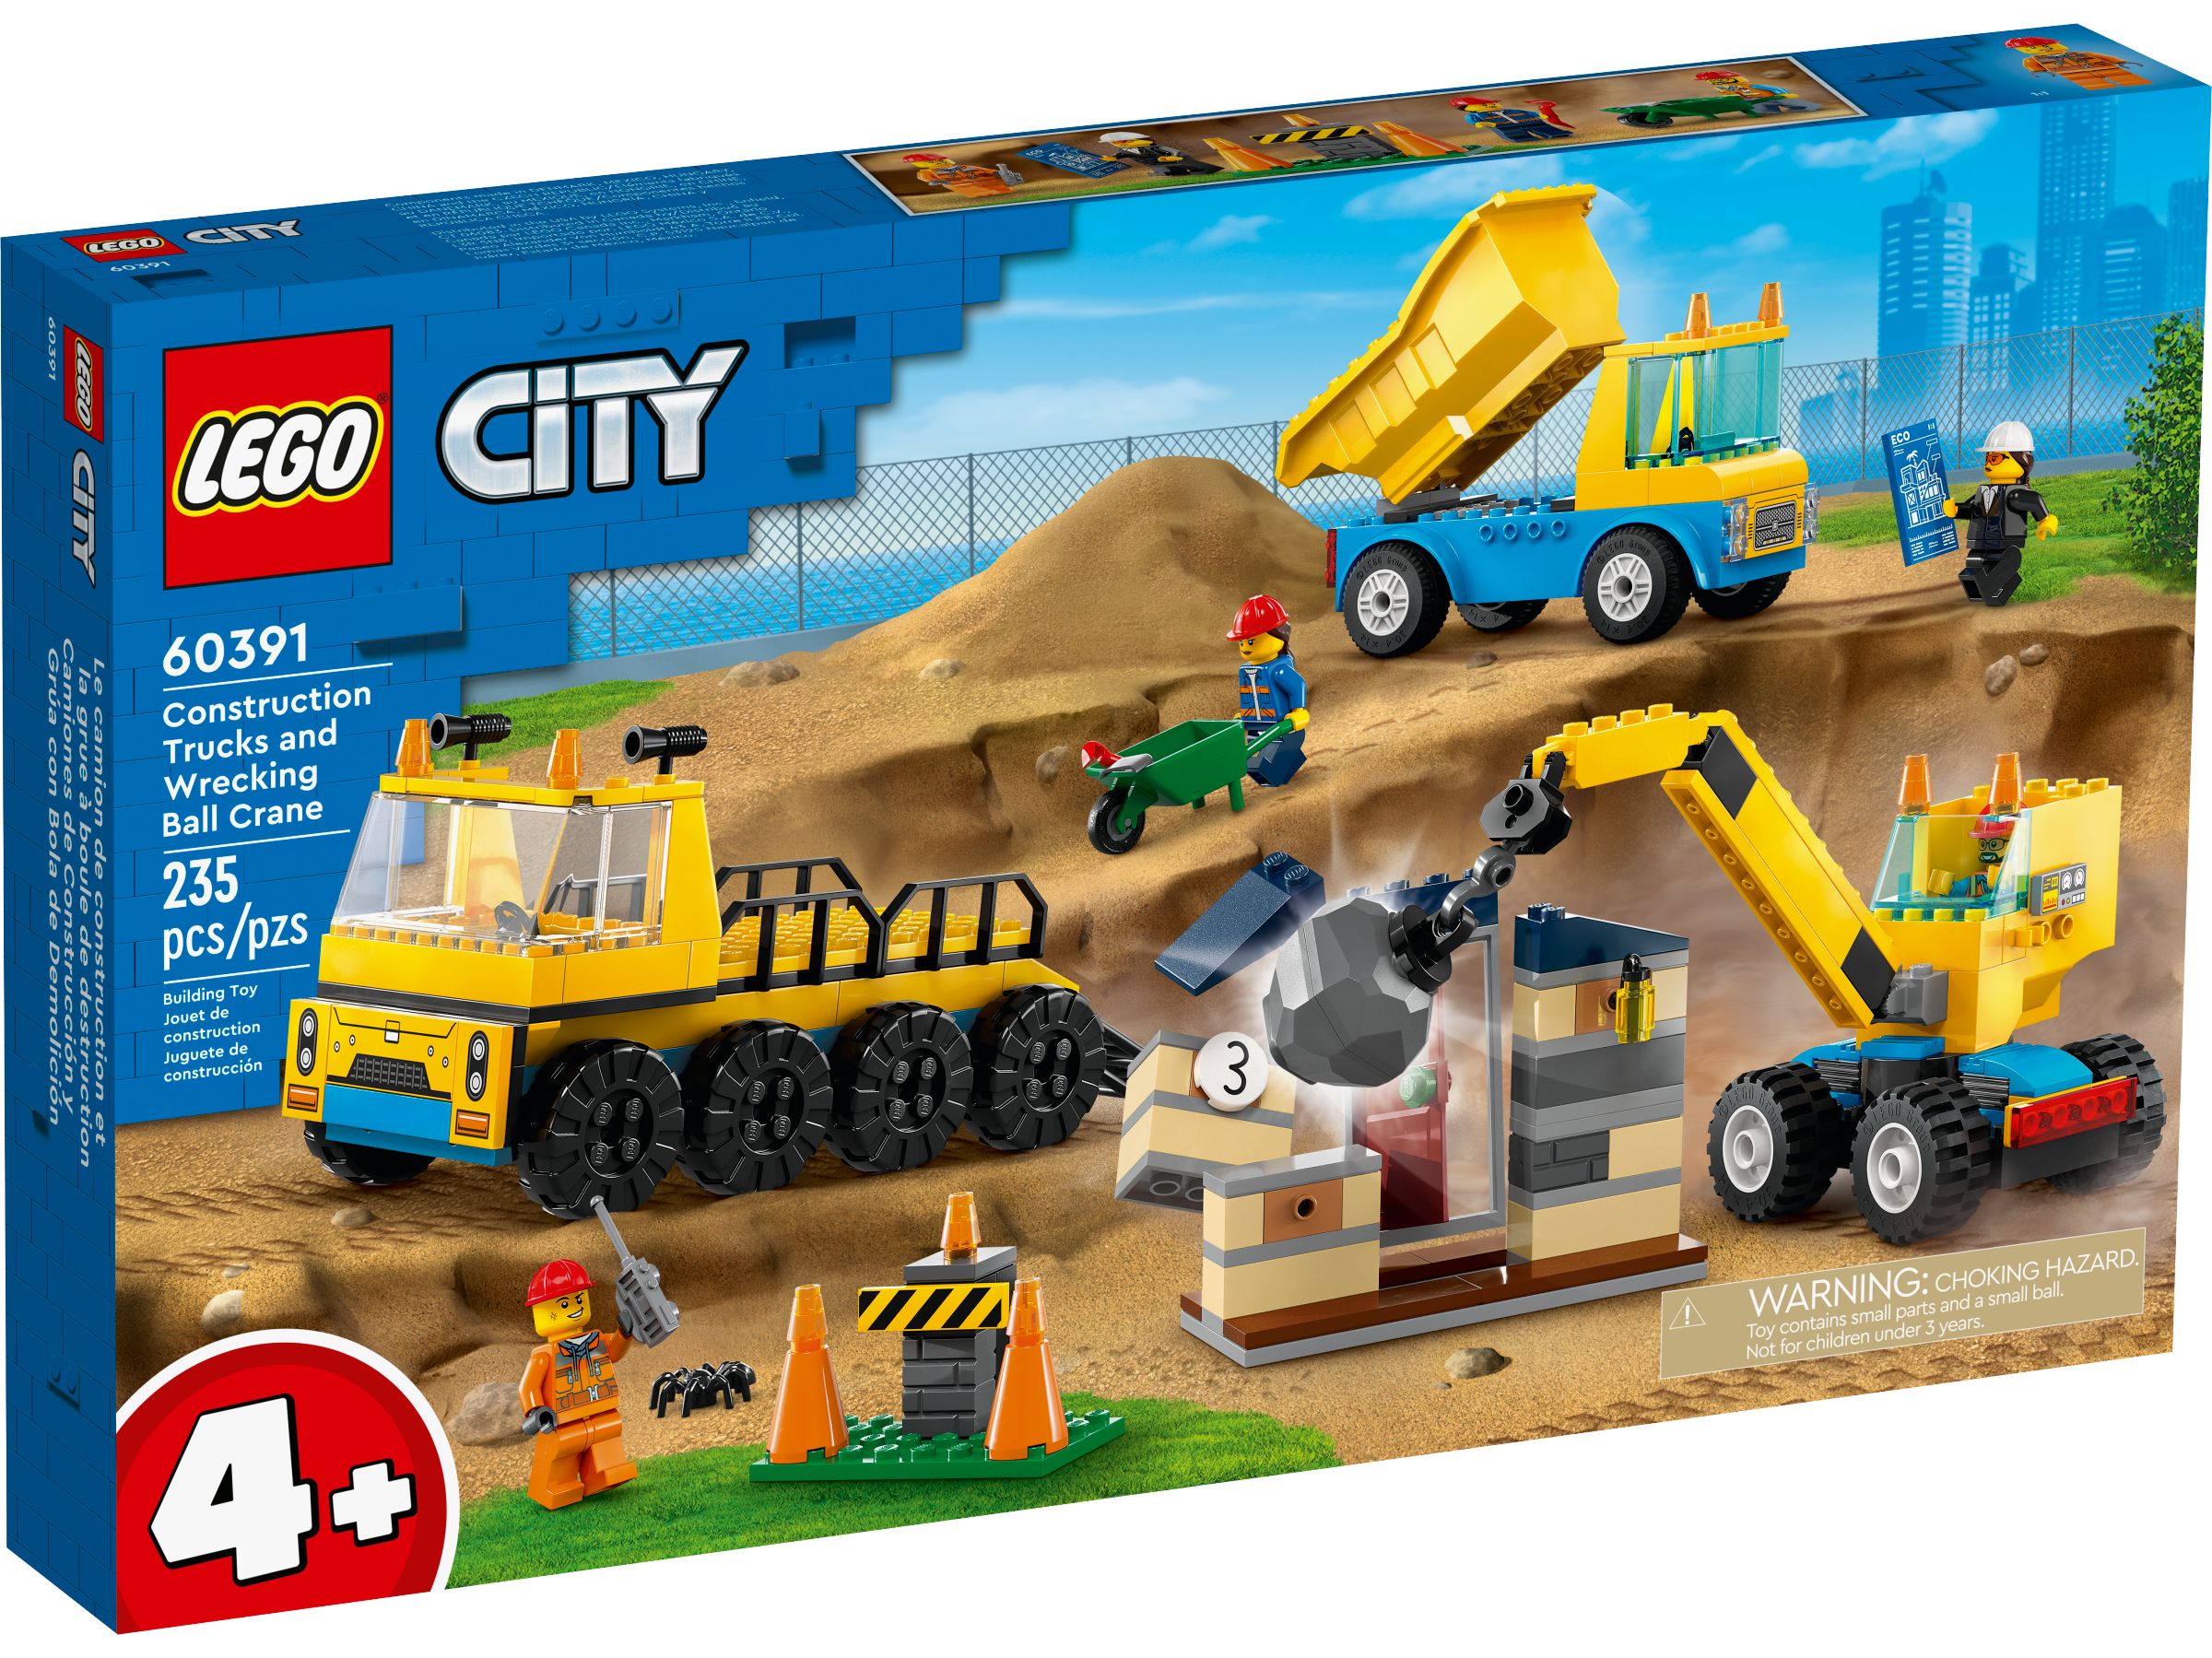 LEGO City 60391 Baufahrzeuge und Kran mit Abrissbirne LEGO_60391_Box1_v39.jpg